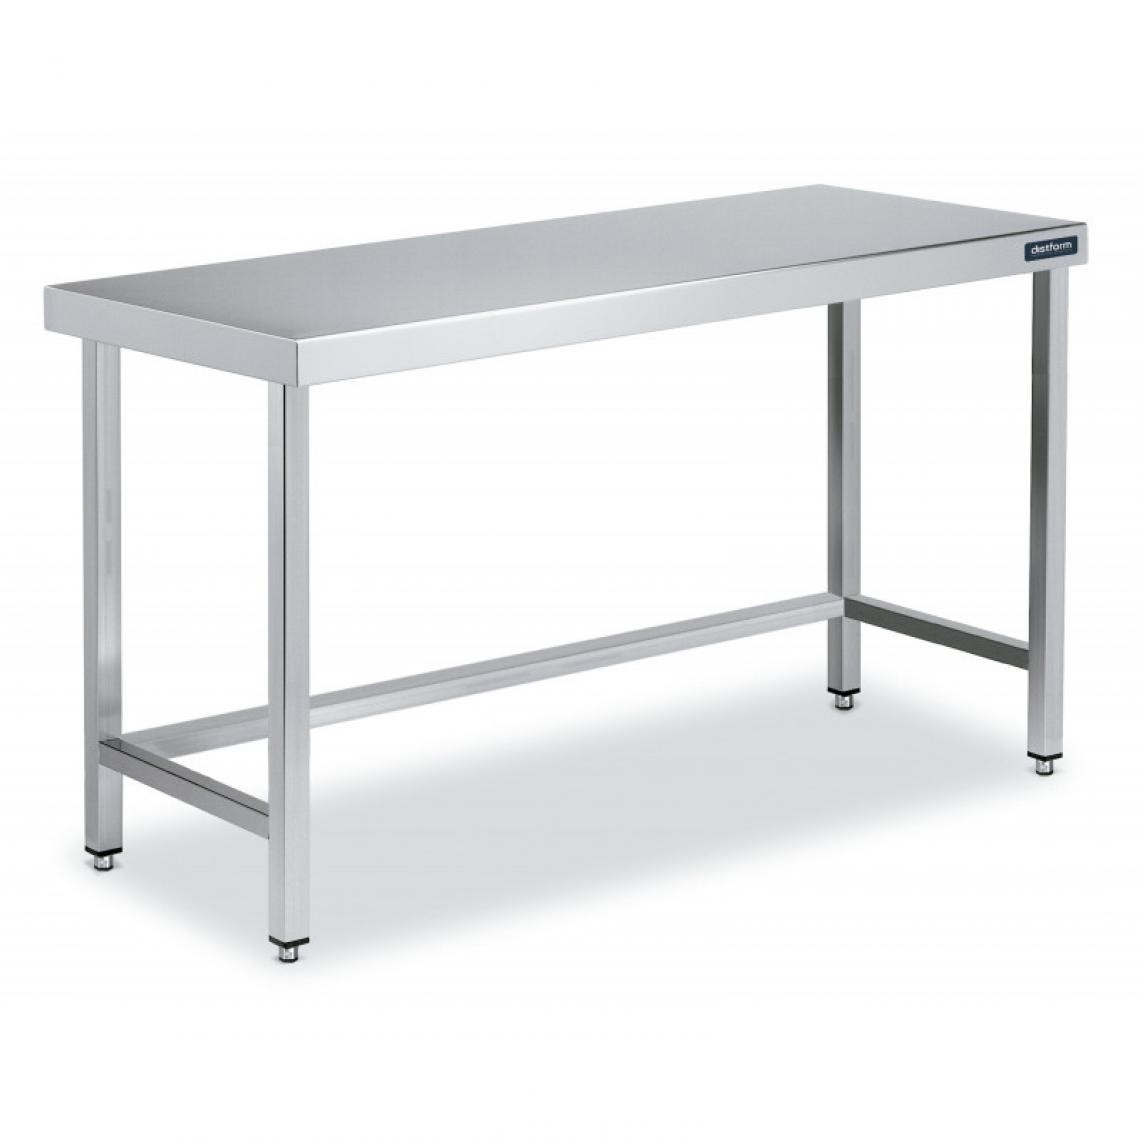 DISTFORM - Table Centrale en Inox avec renforts Profondeur 600mm - Distform - Acier inoxydable1100x600 - Tables à manger